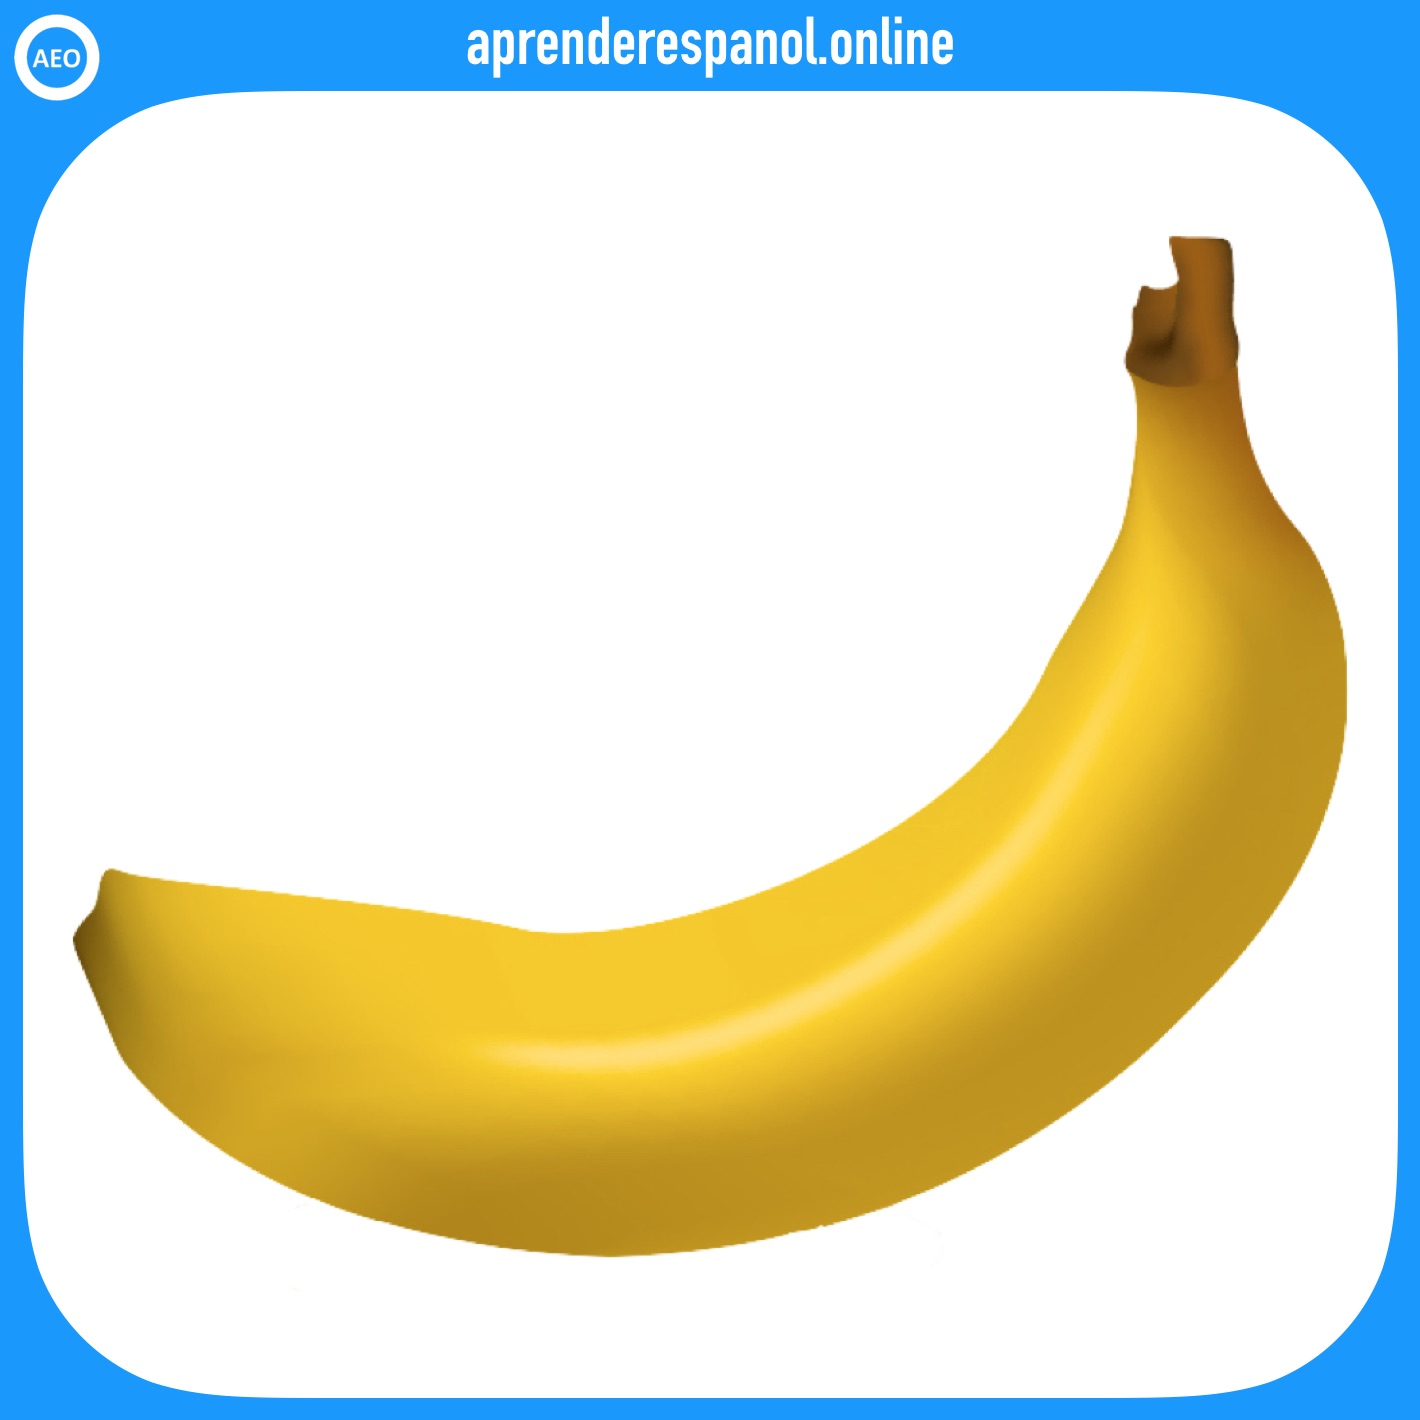 plátano - frutas en español - vocabulario de las frutas en español